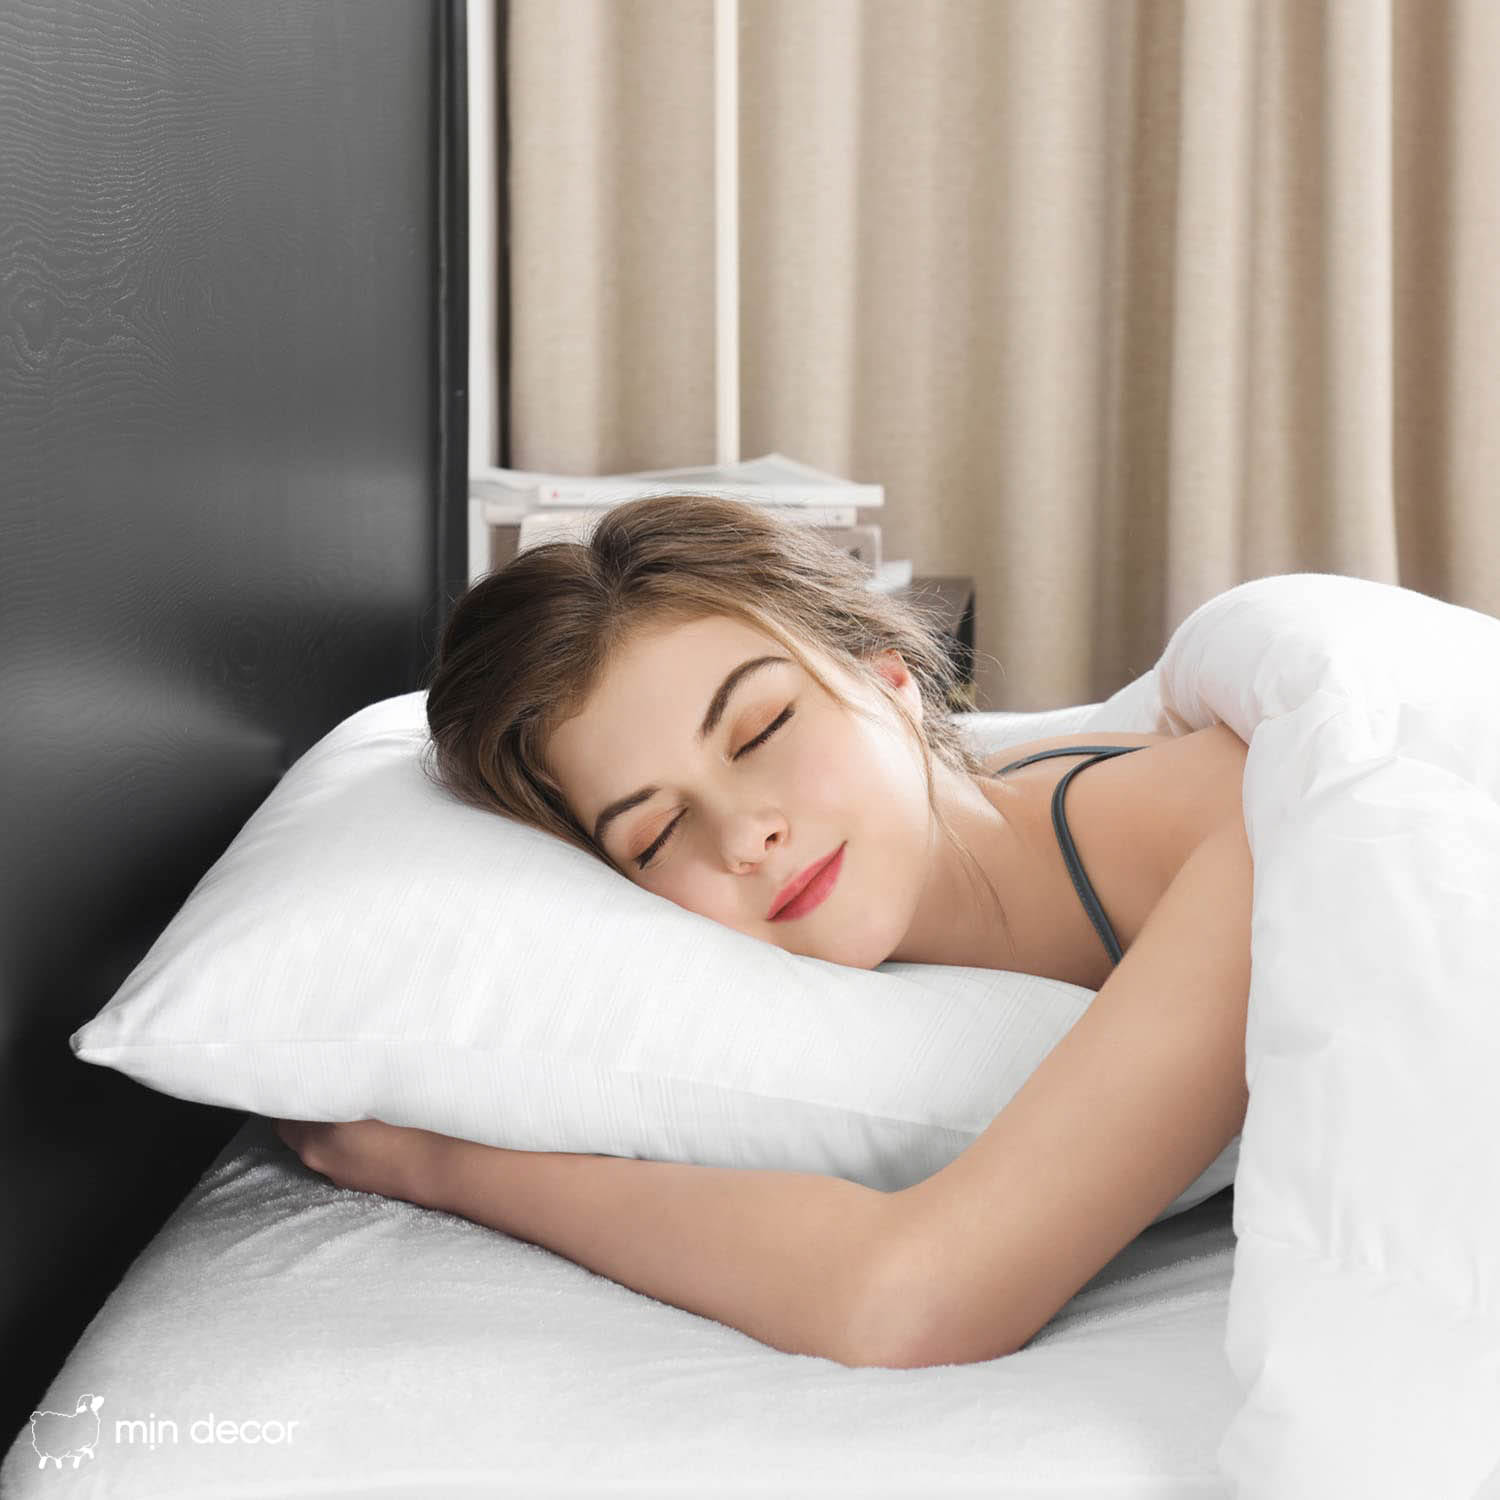 Tầm quan trọng của giấc ngủ và những tips giúp ngủ ngon mỗi đêm